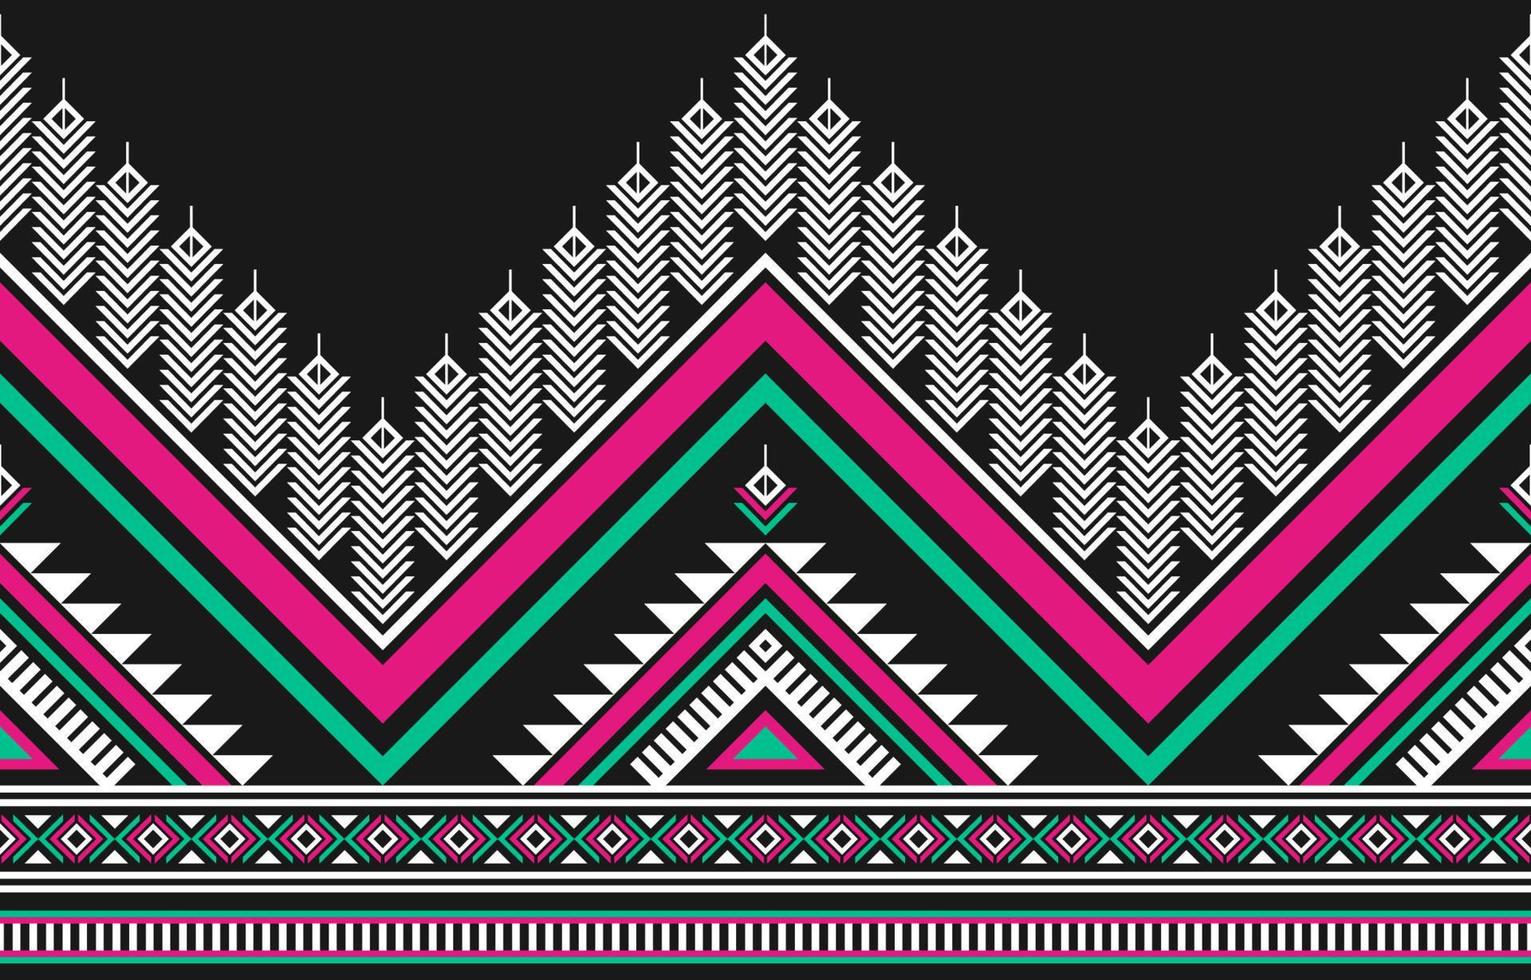 abstract etnisch aztec kunst. meetkundig naadloos patroon in stam. grens decoratie. vector